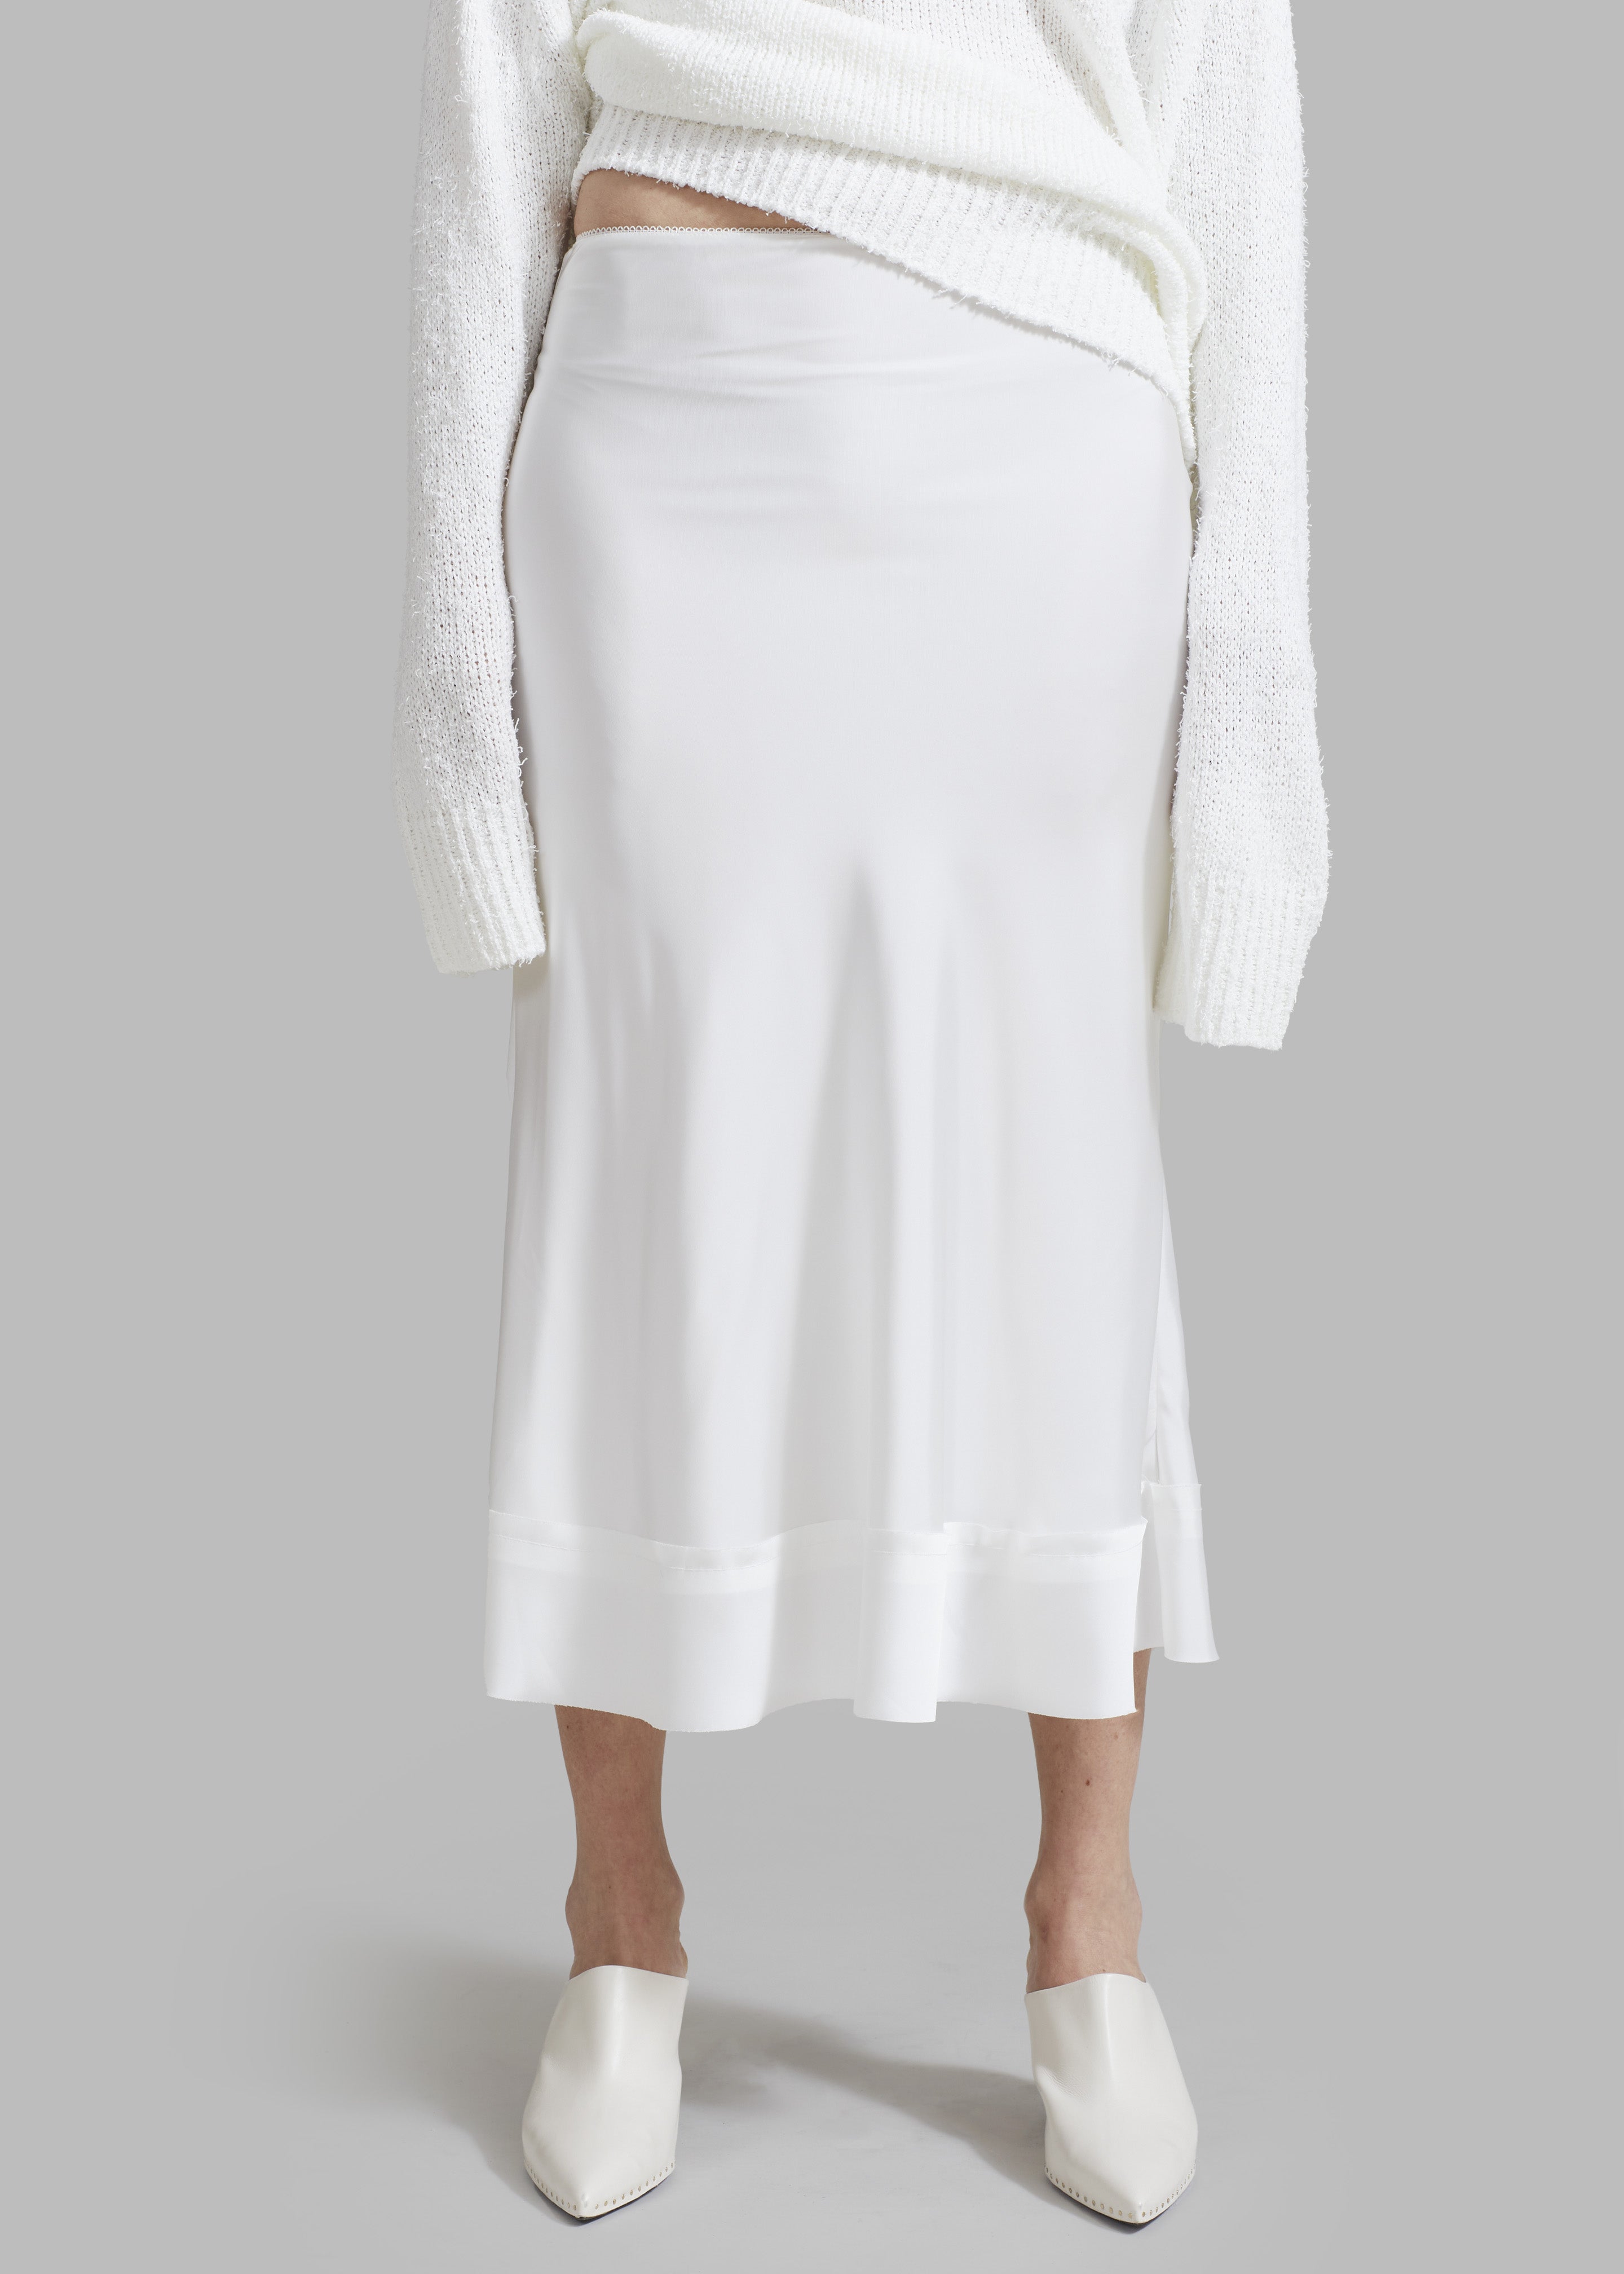 Vosgi Silky Skirt - White - 5